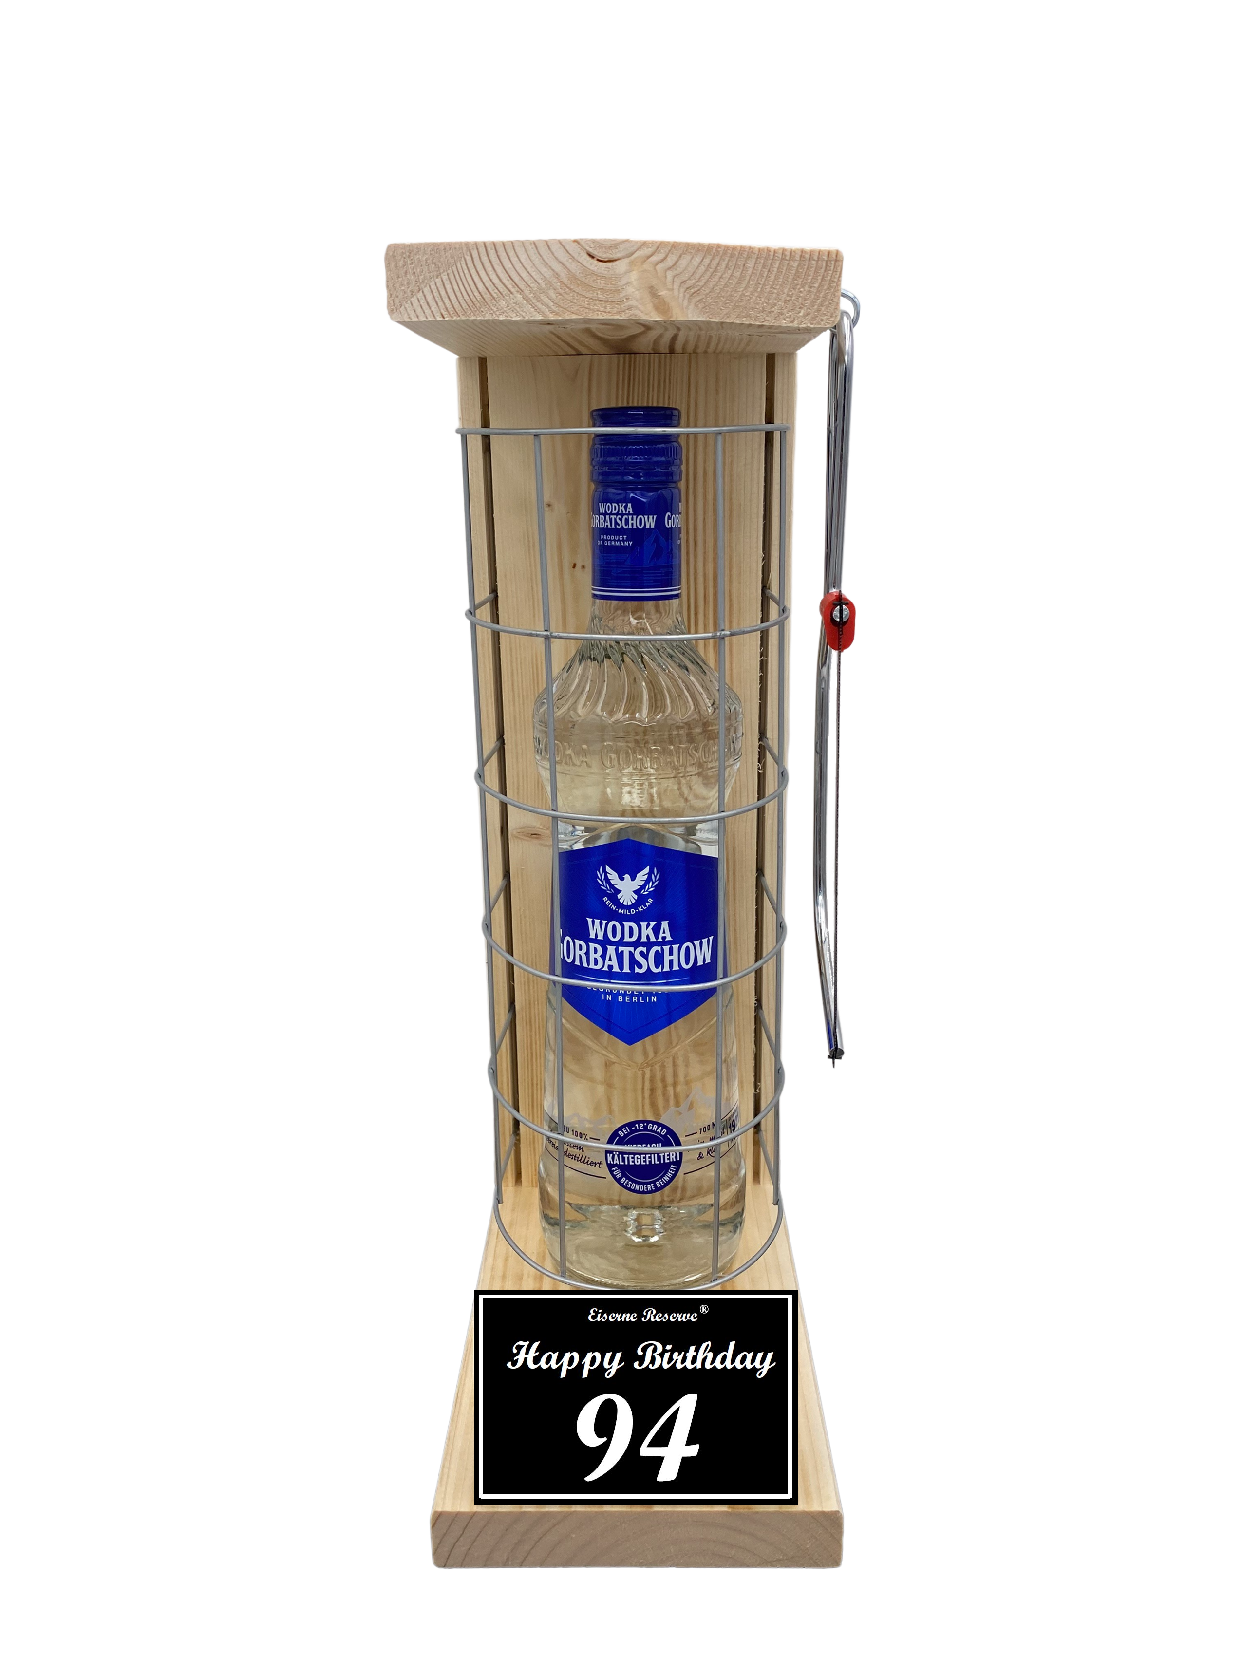 Wodka Geschenk zum 94 Geburtstag - Eiserne Reserve Gitterkäfig